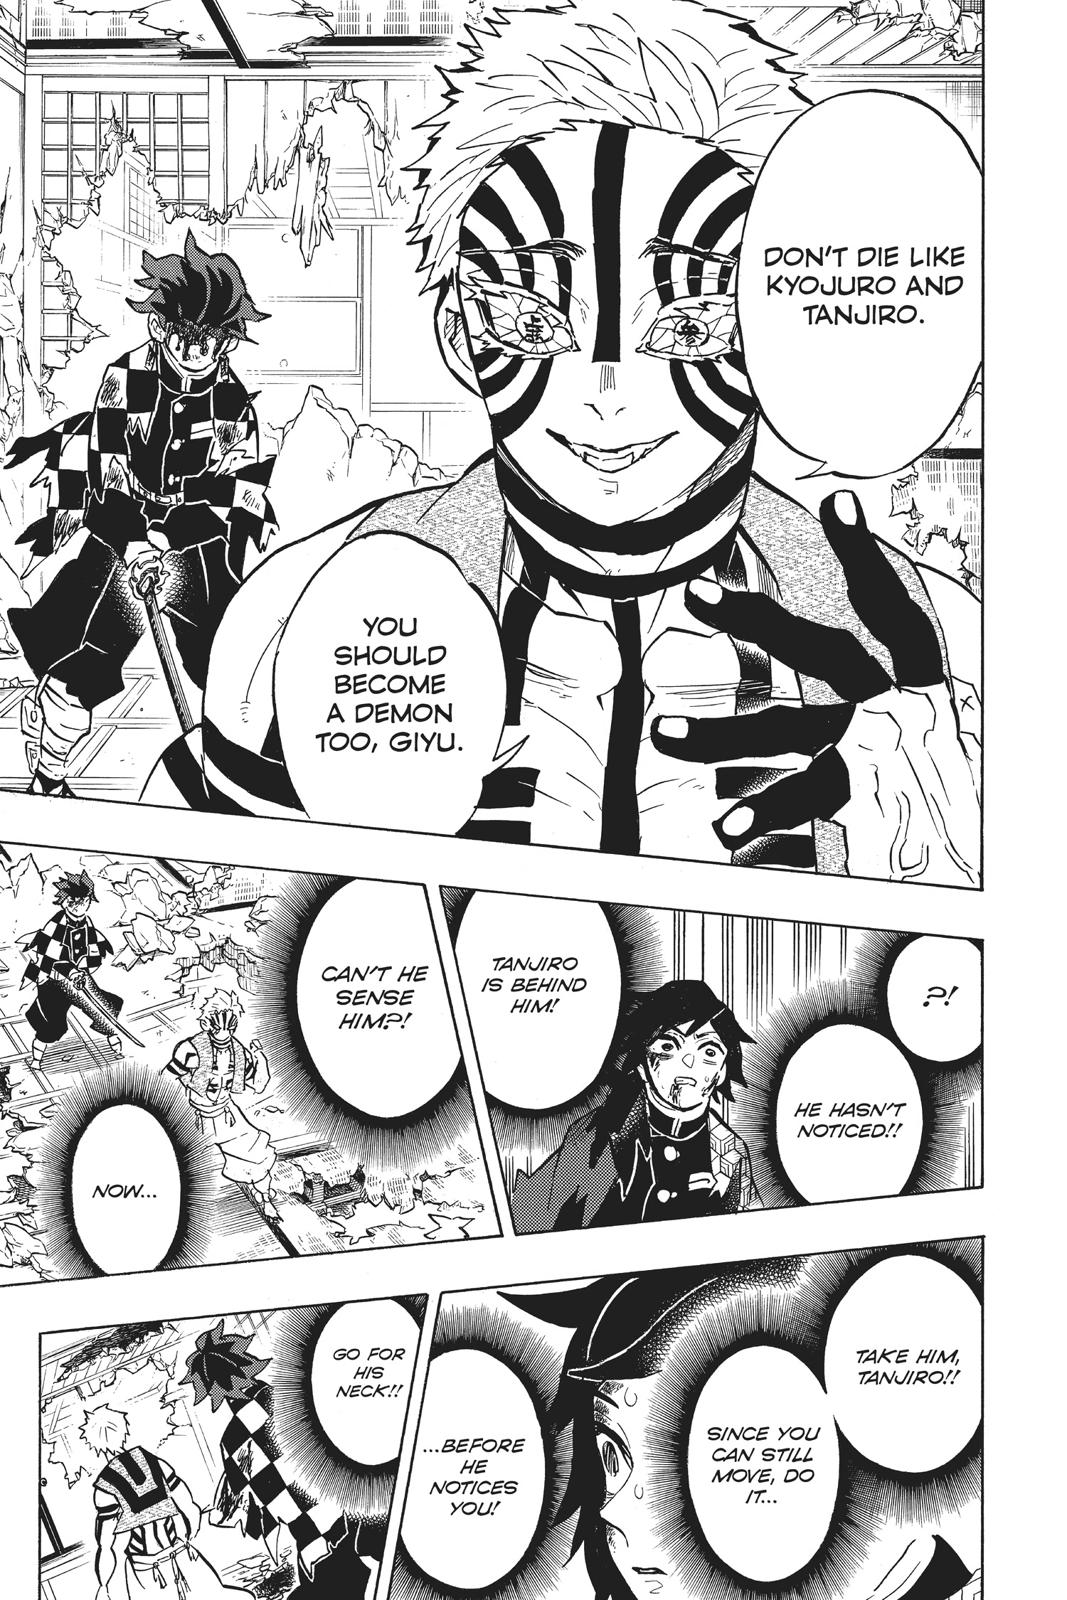 Demon Slayer Manga Manga Chapter - 152 - image 13